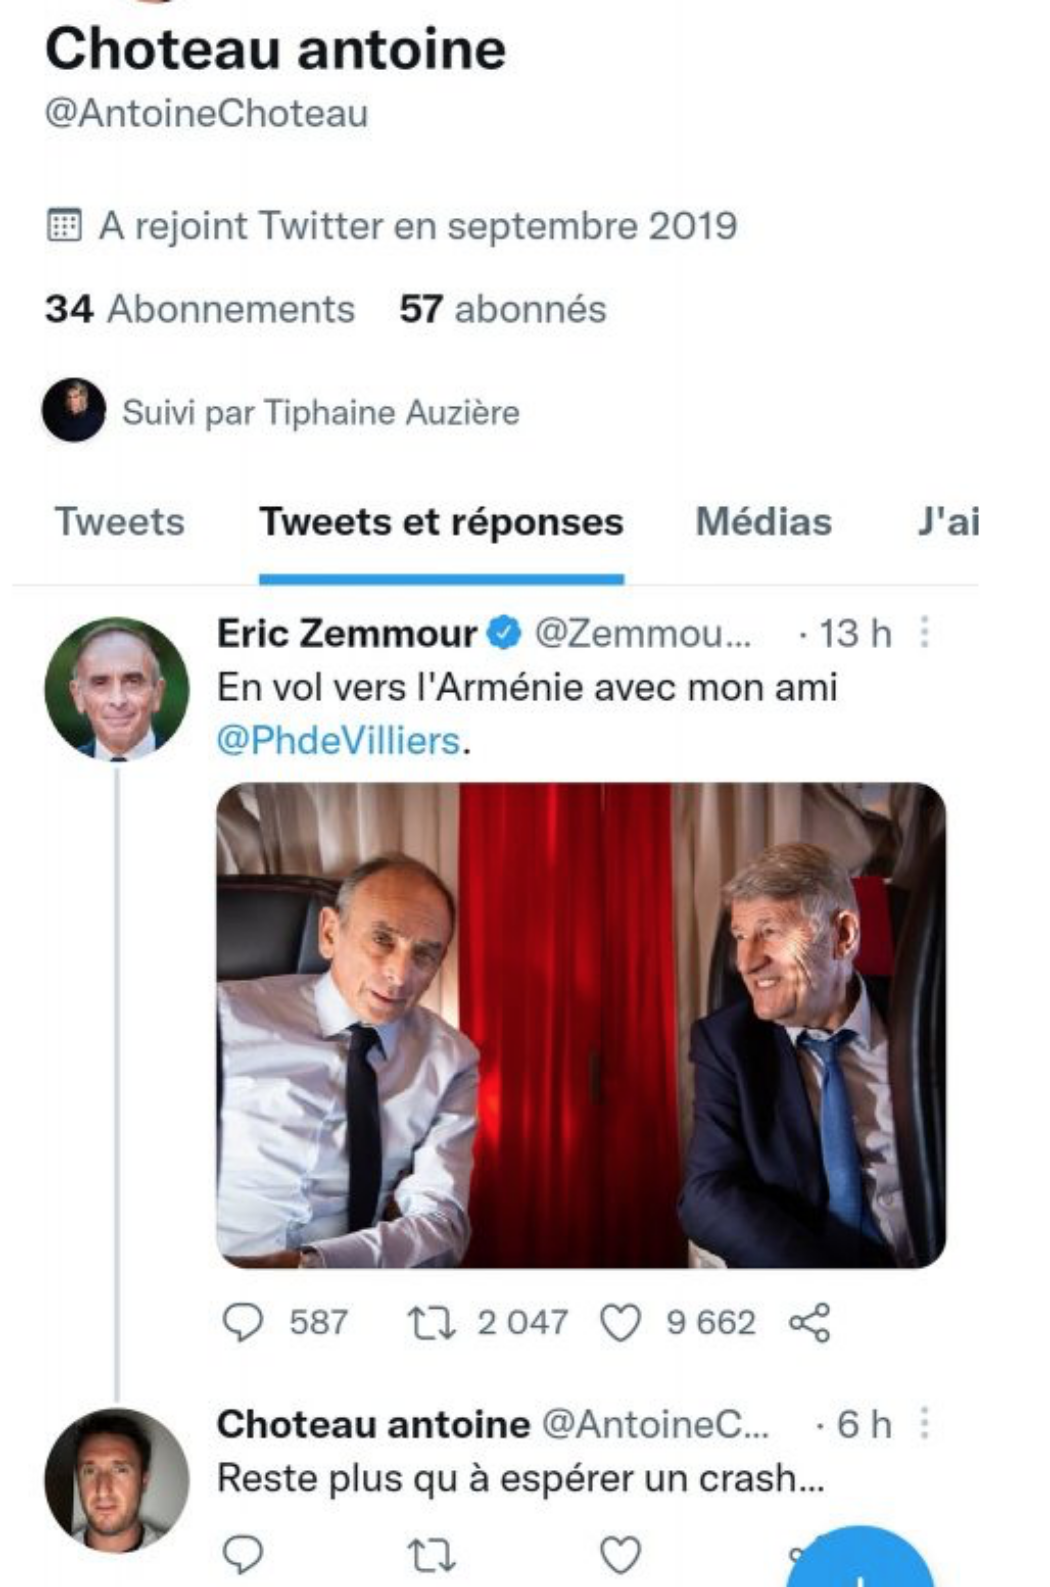 Antoine Choteau, gendre de Macron, espère que l’avion d’Eric Zemmour se crashe